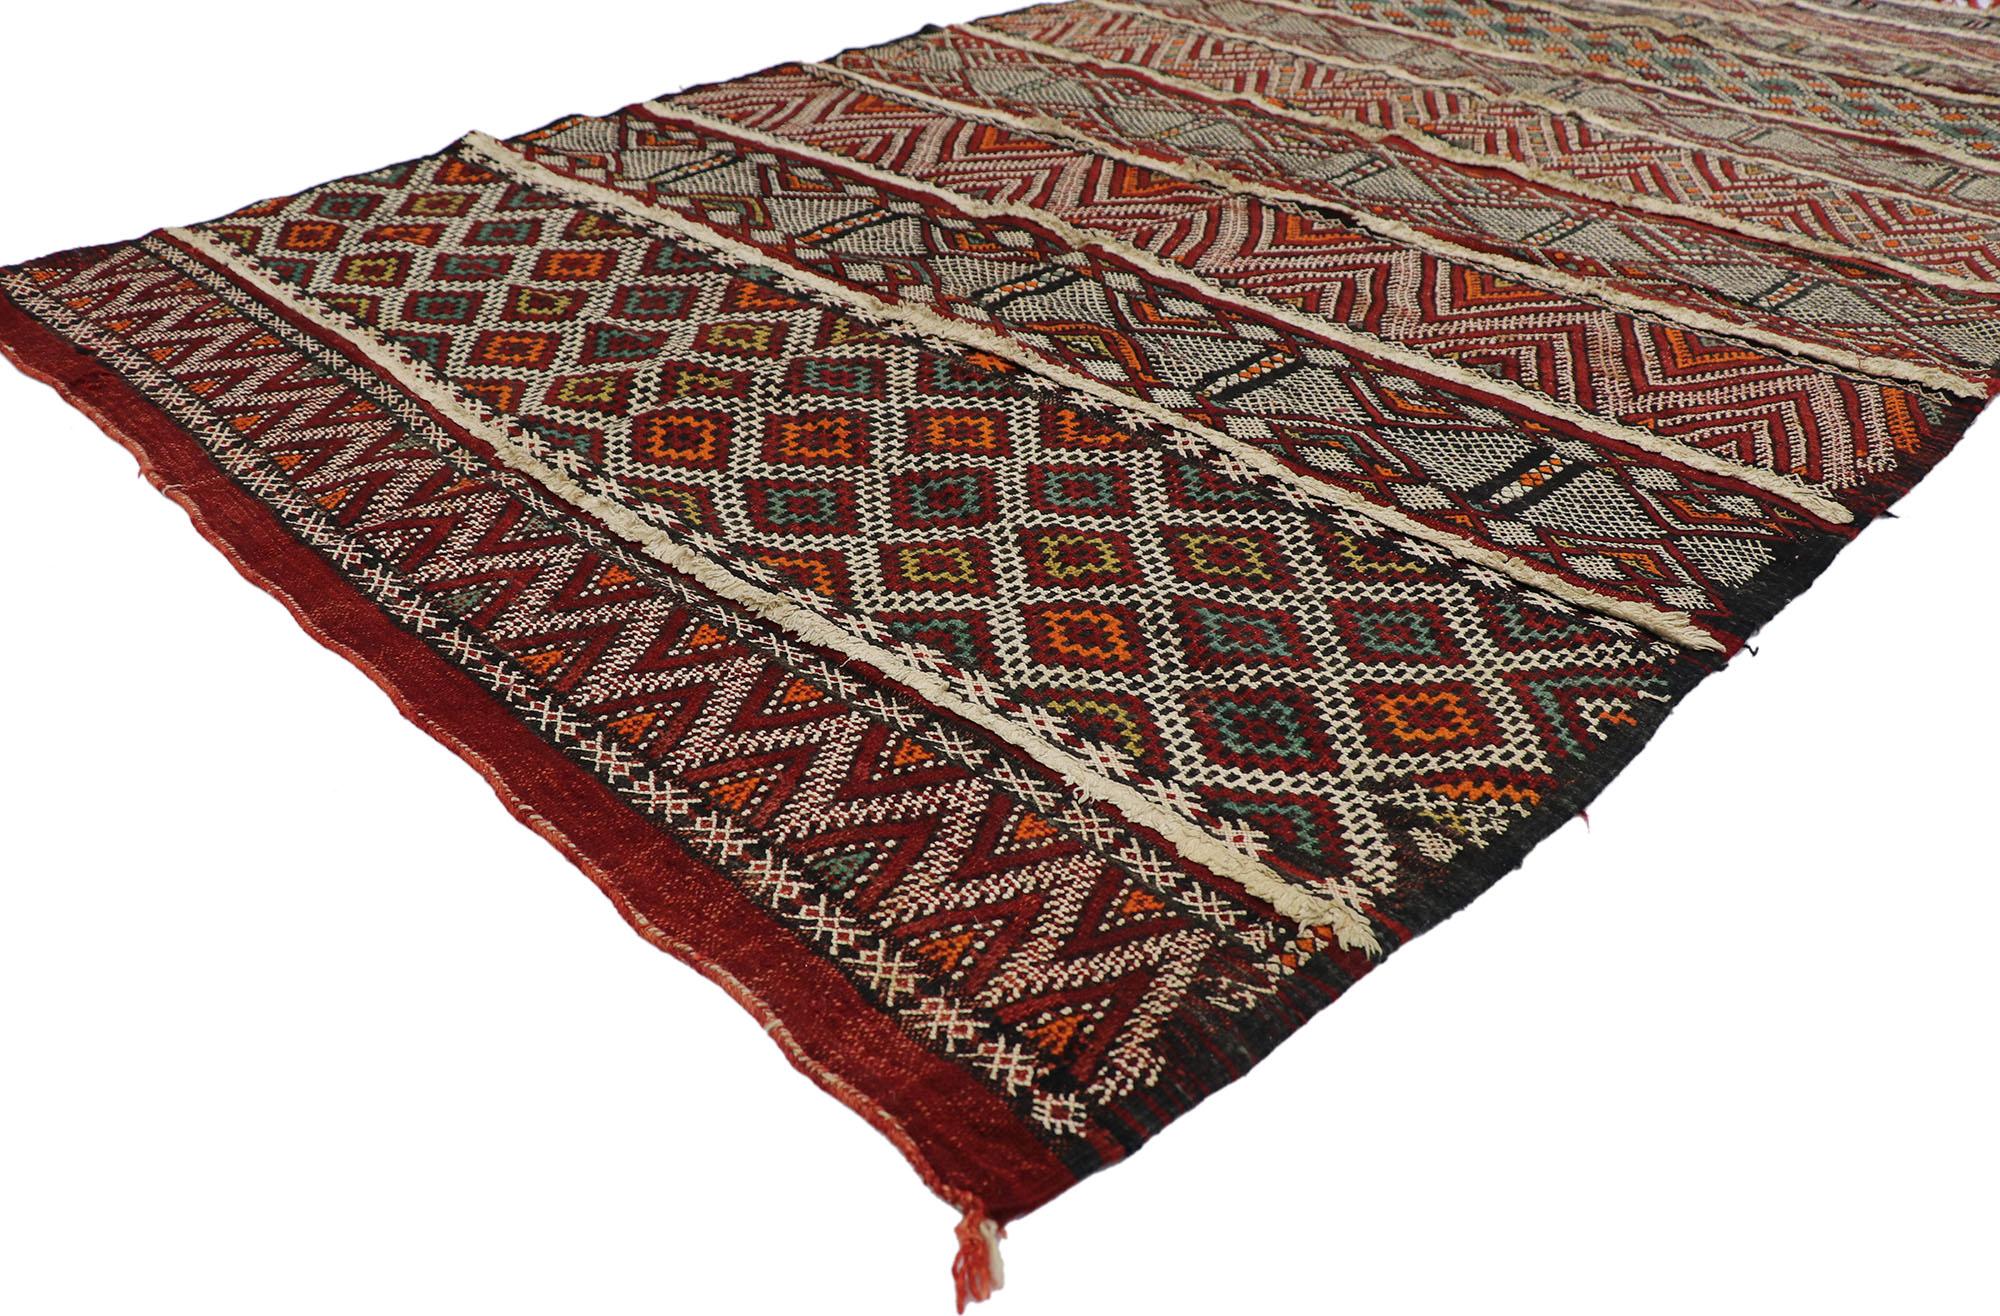 21471 Vintage Zemmour Marokkanischer Kilim-Teppich mit Tribal-Stil 04'11 x 08'04. Dieser handgewebte marokkanische Zemmour-Berber-Kelim aus Wolle mit winzigen Details und einem kühnen, ausdrucksstarken Design im Stammesstil ist eine fesselnde Vision